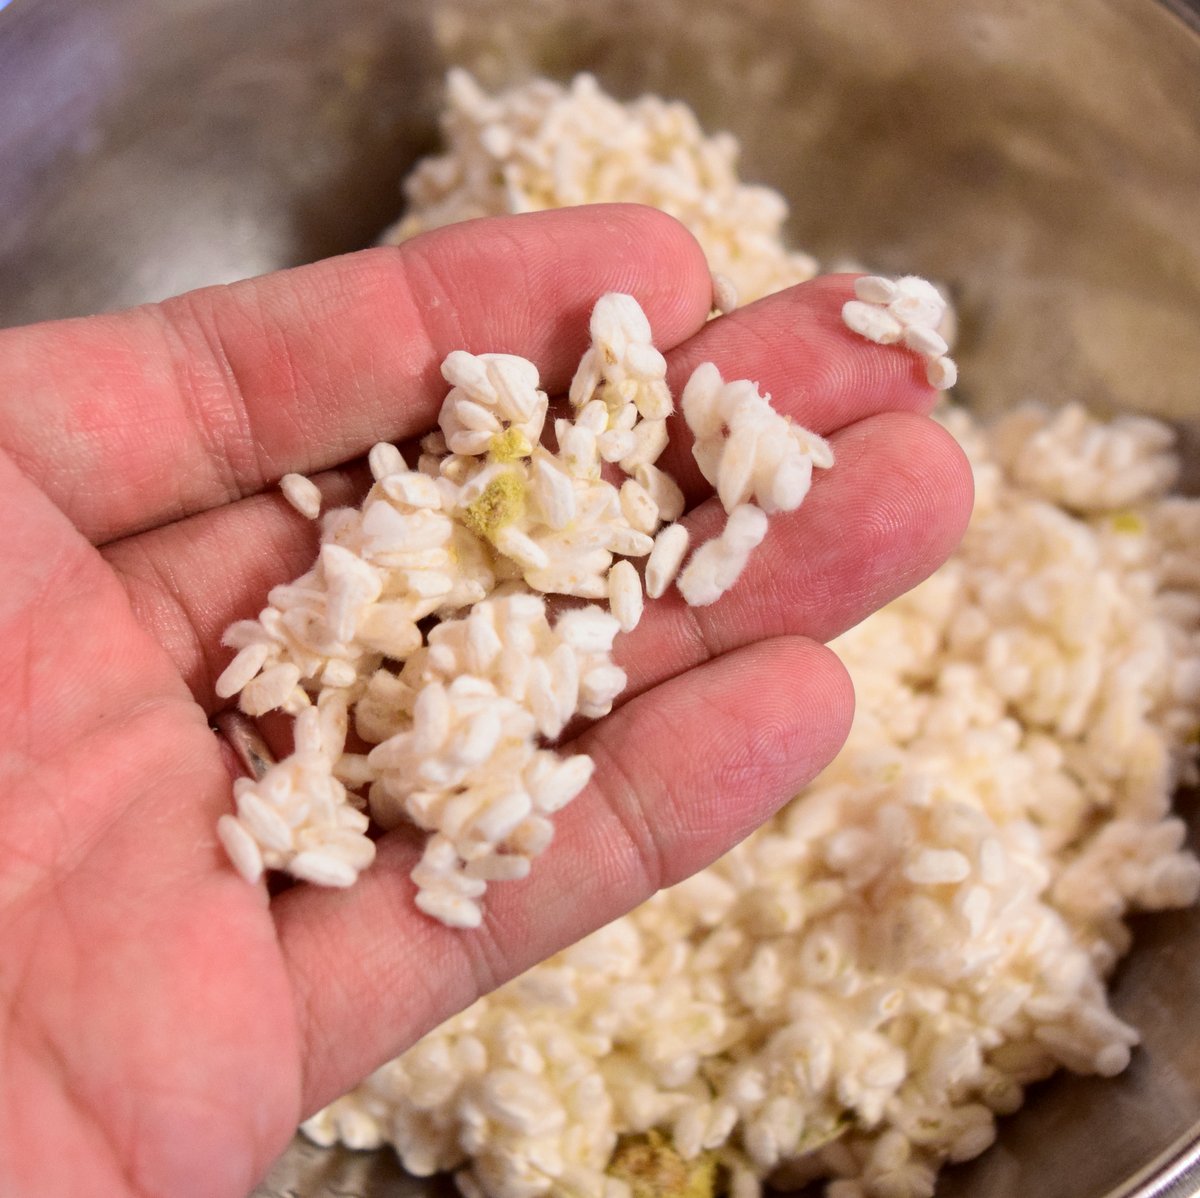 米ぬかから天然麹菌を培養し米麹を作る - オトコ中村の楽しい毎日